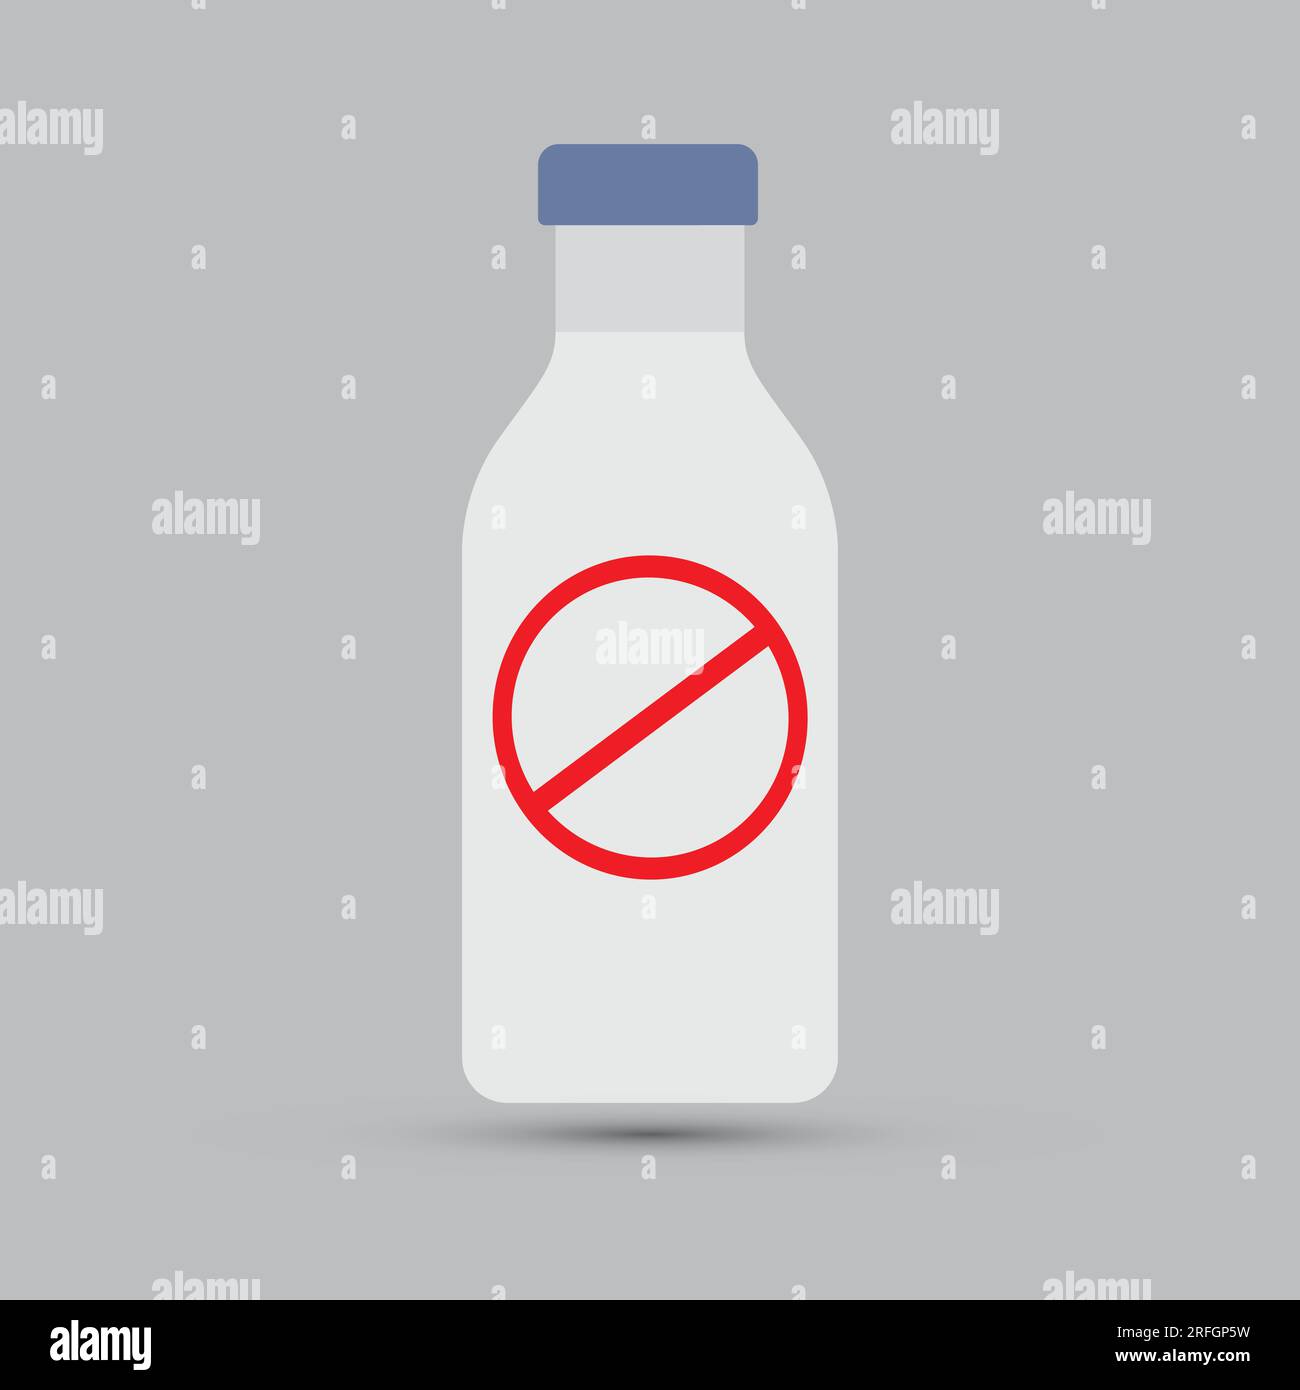 Milchflasche mit Verbotsschild, keine Milch, laktosefrei, allergenfrei Konzept Stock Vektor